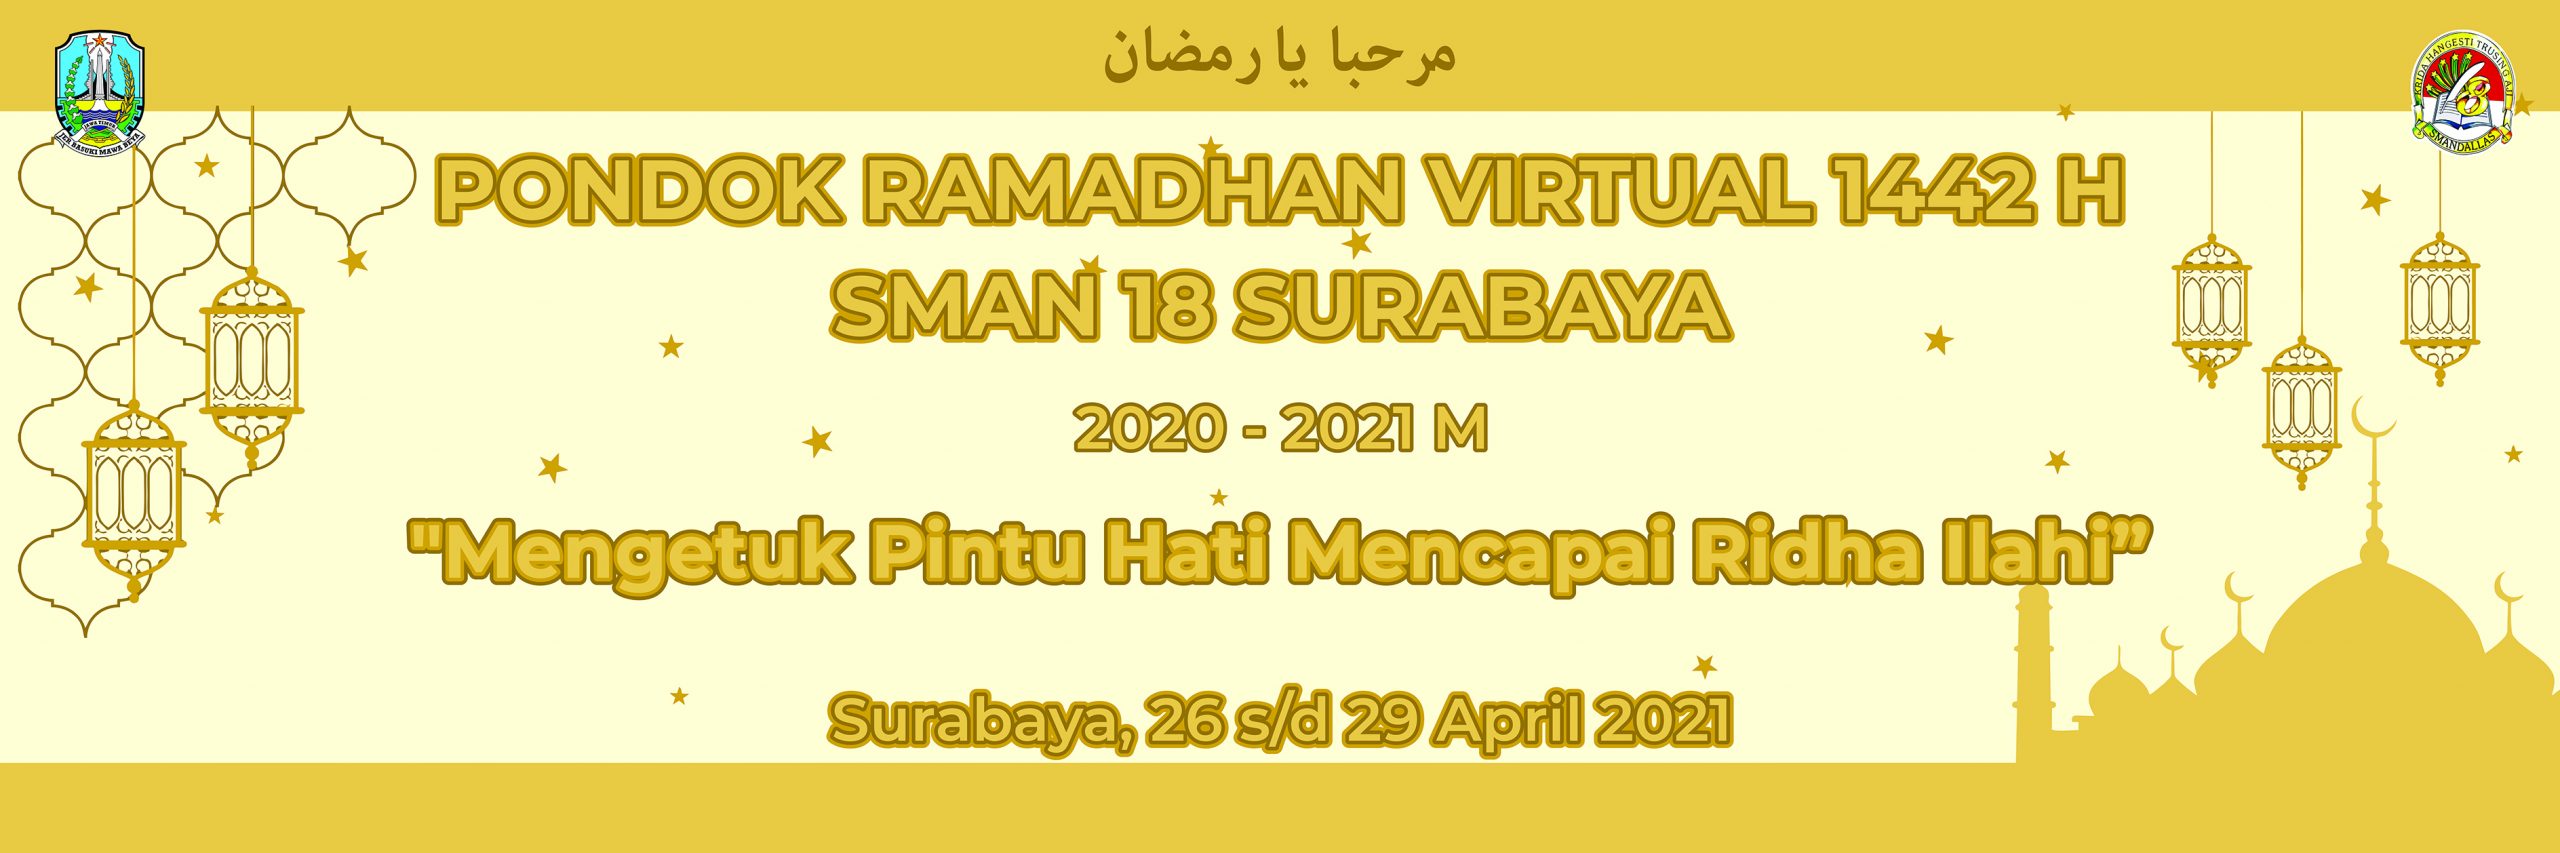 Pondok Ramadhan Virtual 1442 H